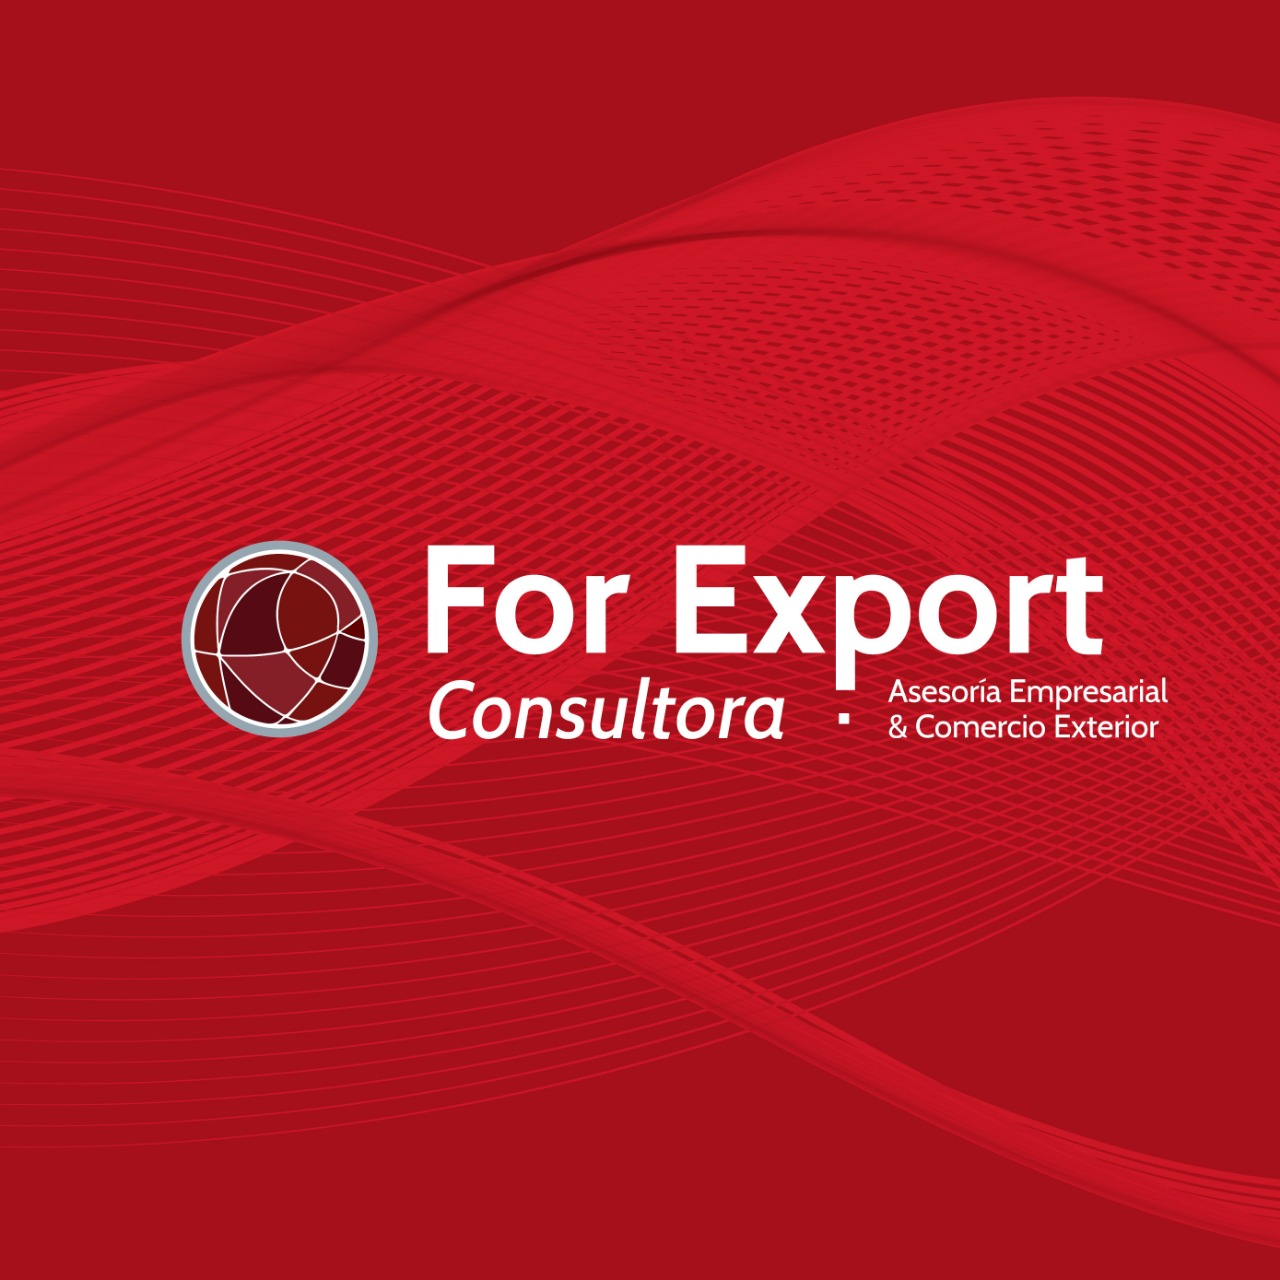 For Export Consultora